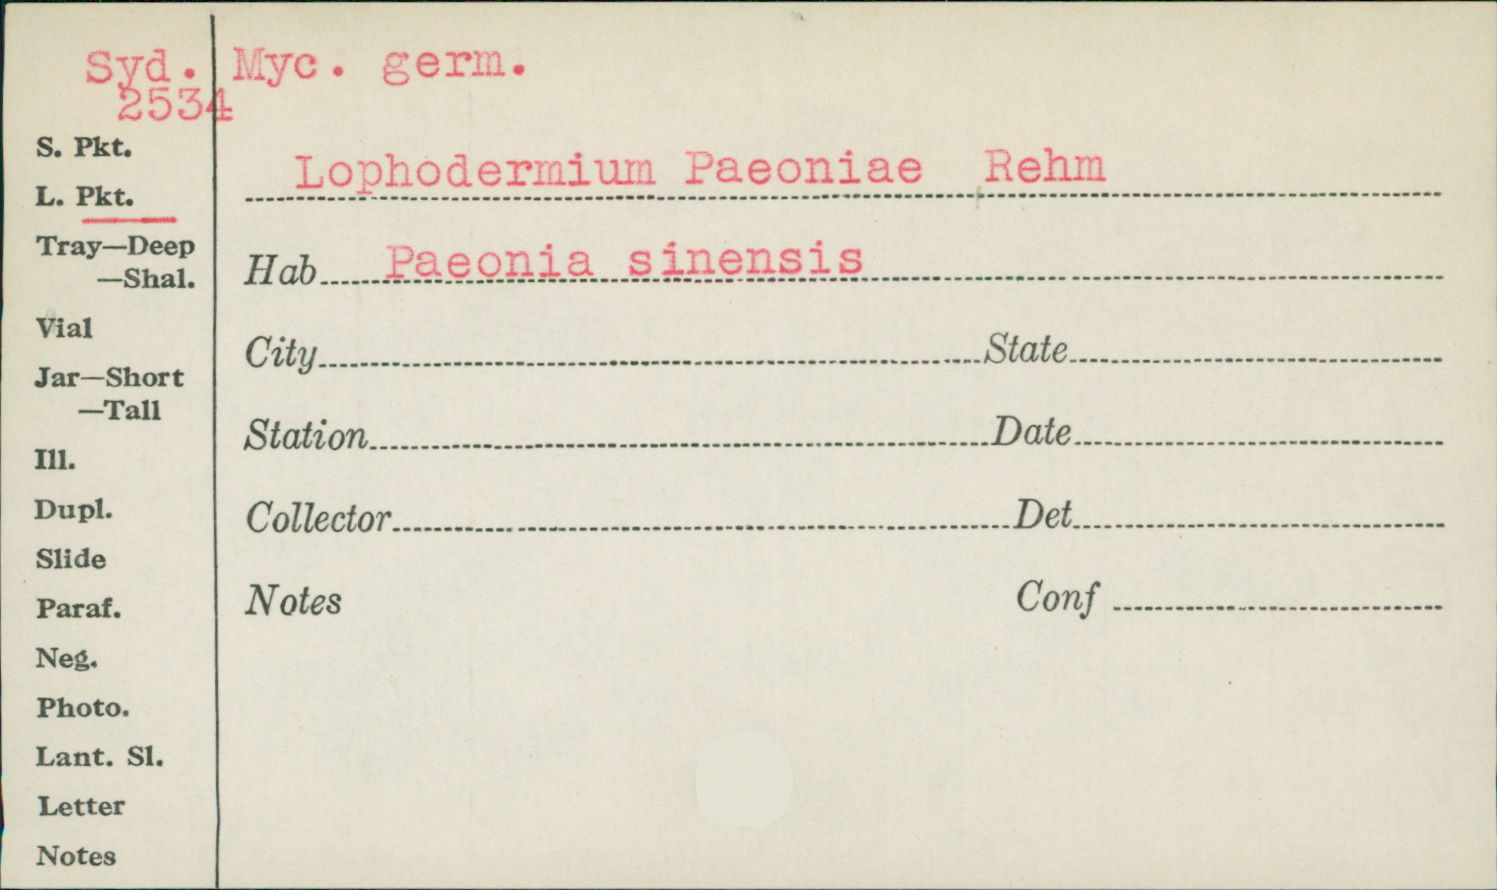 Lophodermium paeoniae image